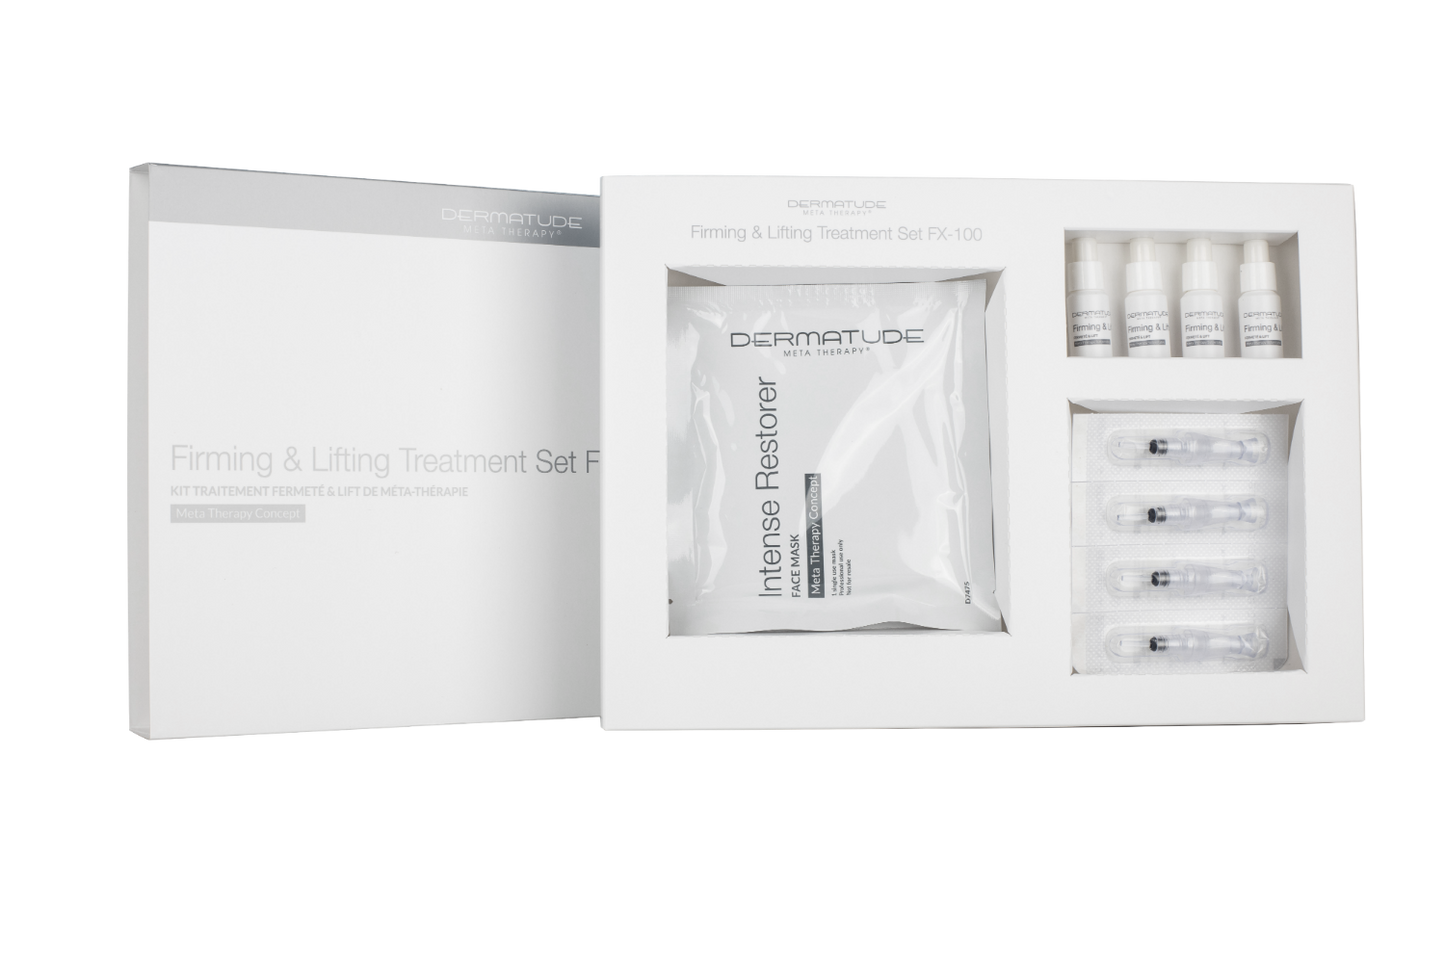 Dermatude FX-100 Firming & Lifting Facial Treatment Set (4 treatments)